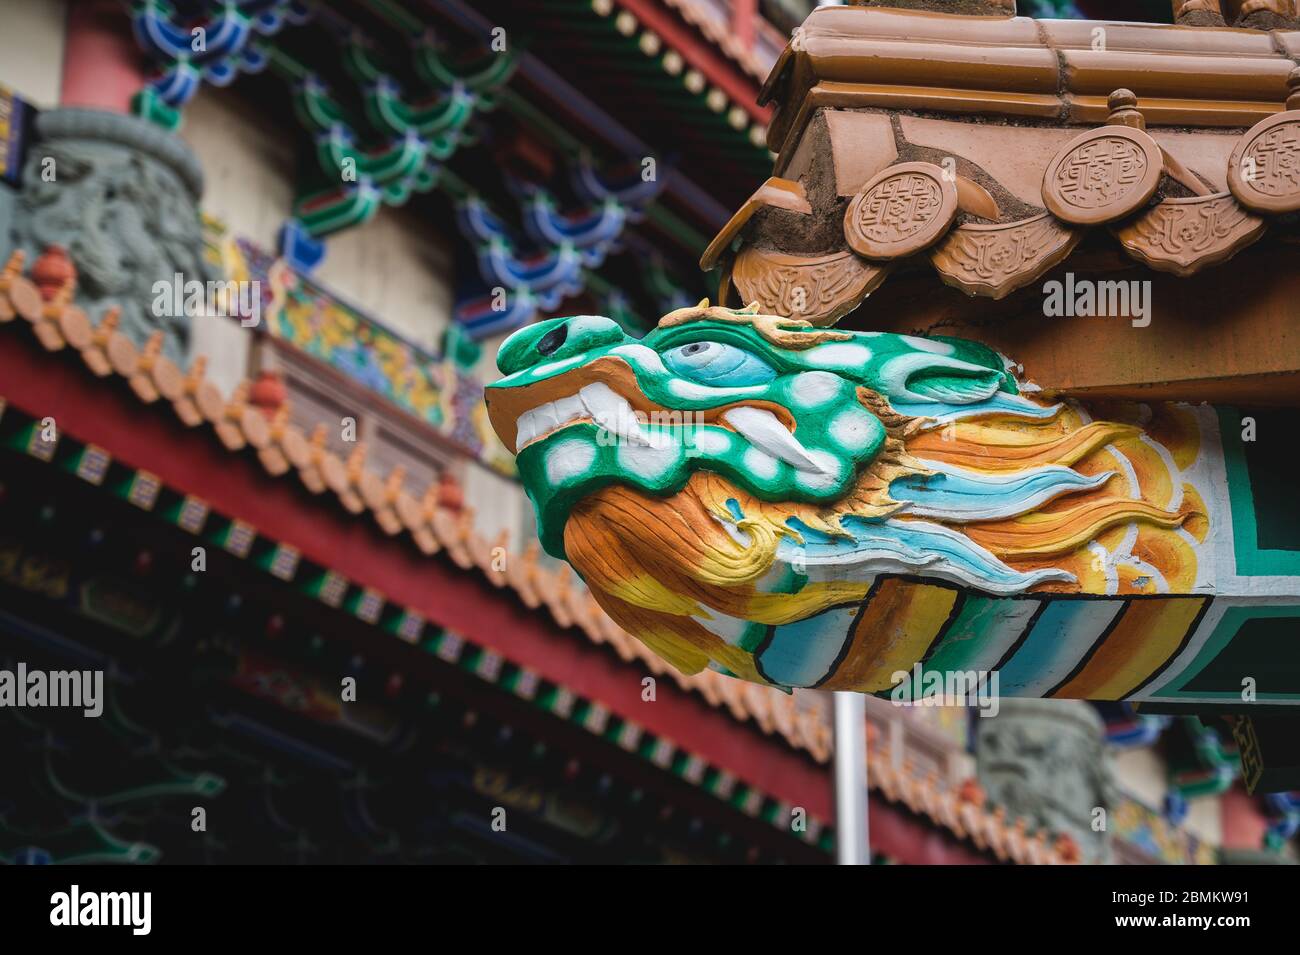 Détail du toit sur le monastère po Lin à Ngong Ping sur l'île de Lantau, Hong Kong Banque D'Images